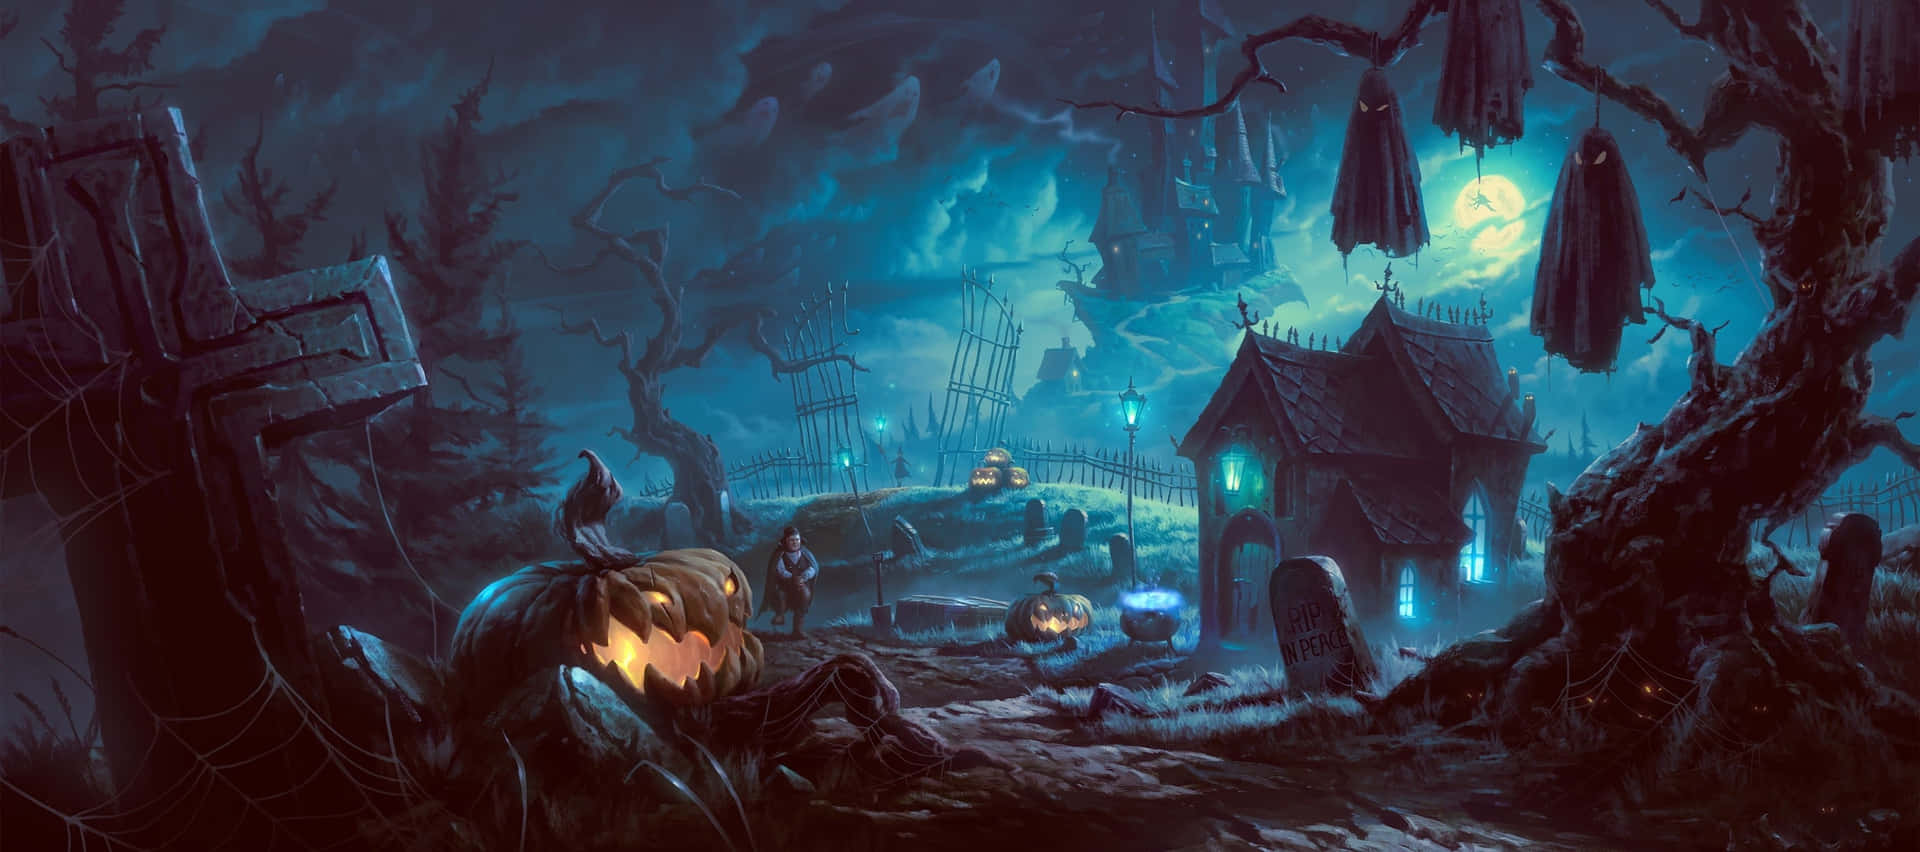 Spooky Art in an Eerie Landscape Wallpaper